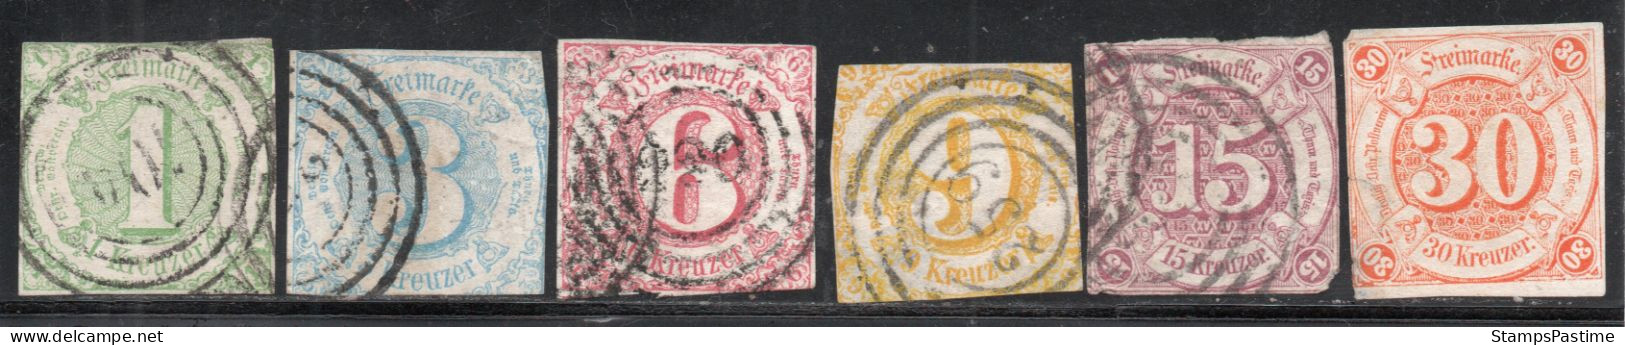 ALEMANIA – THURN Y TAXIS SUR Serie Completa X 6 Sellos Usados CIFRAS Año 1859 – Valorizada En Catálogo € 374,25 - Used